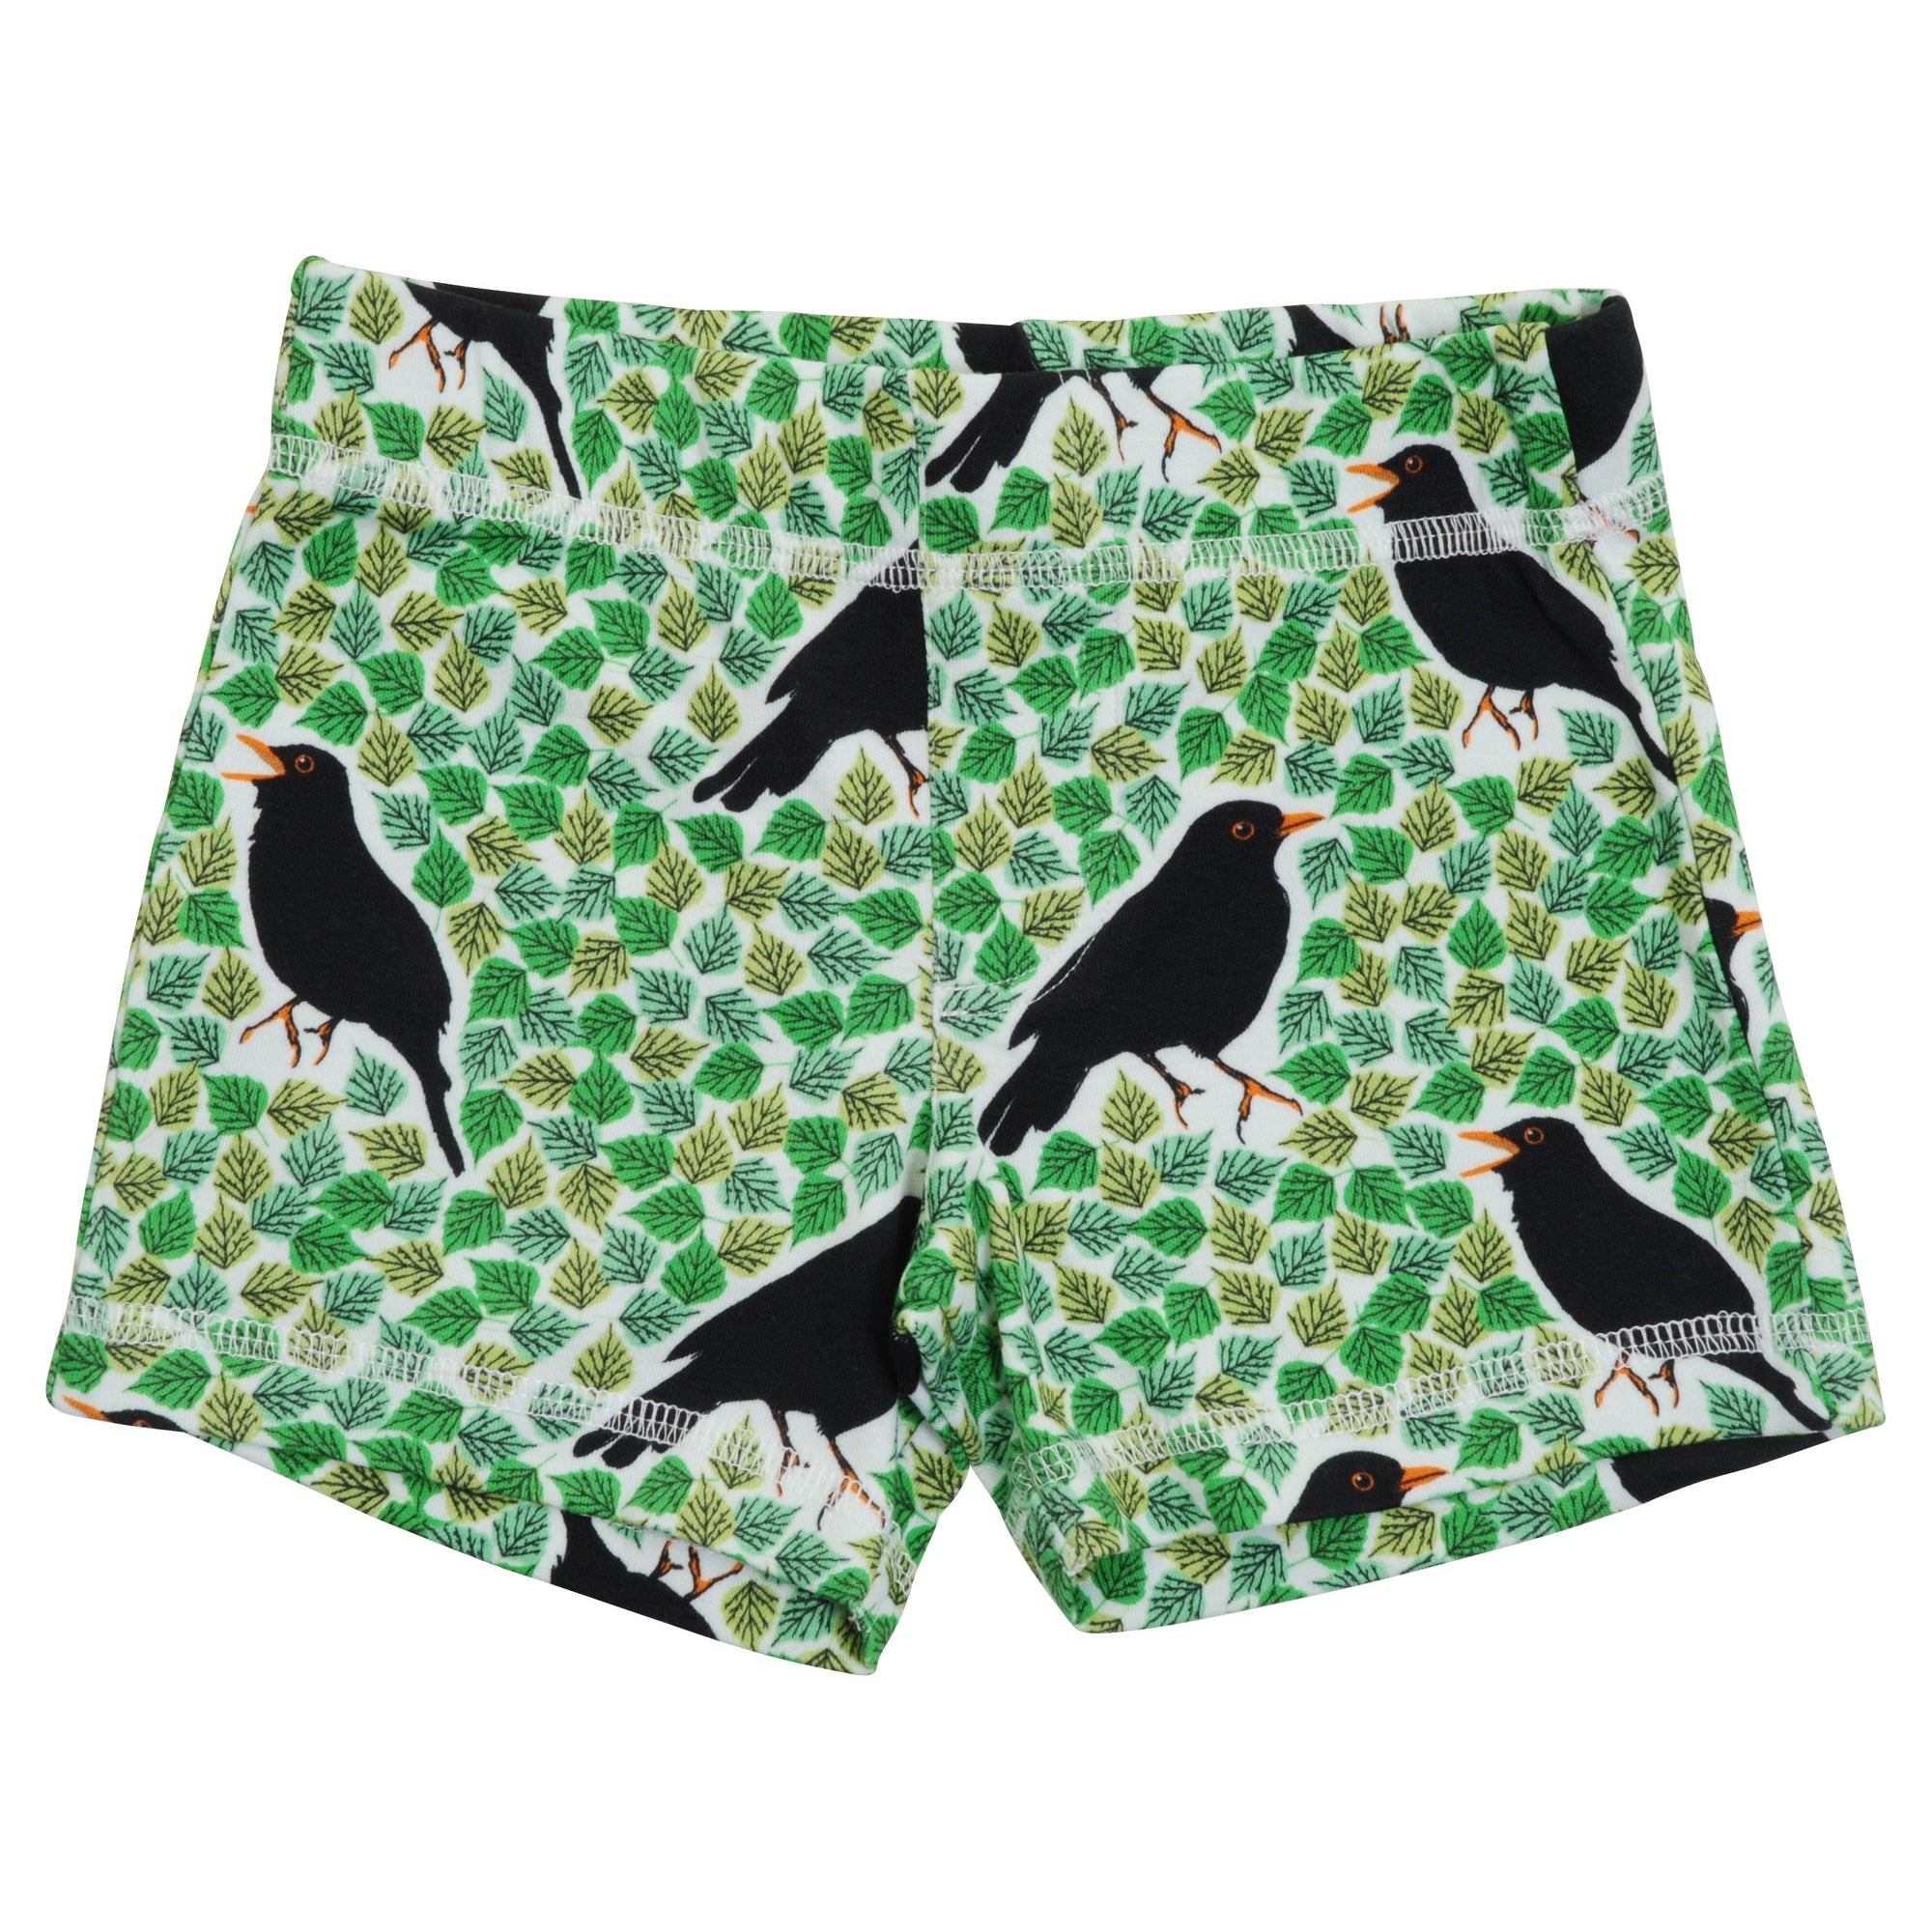 Black Bird - Green Shorts-Duns Sweden-Modern Rascals